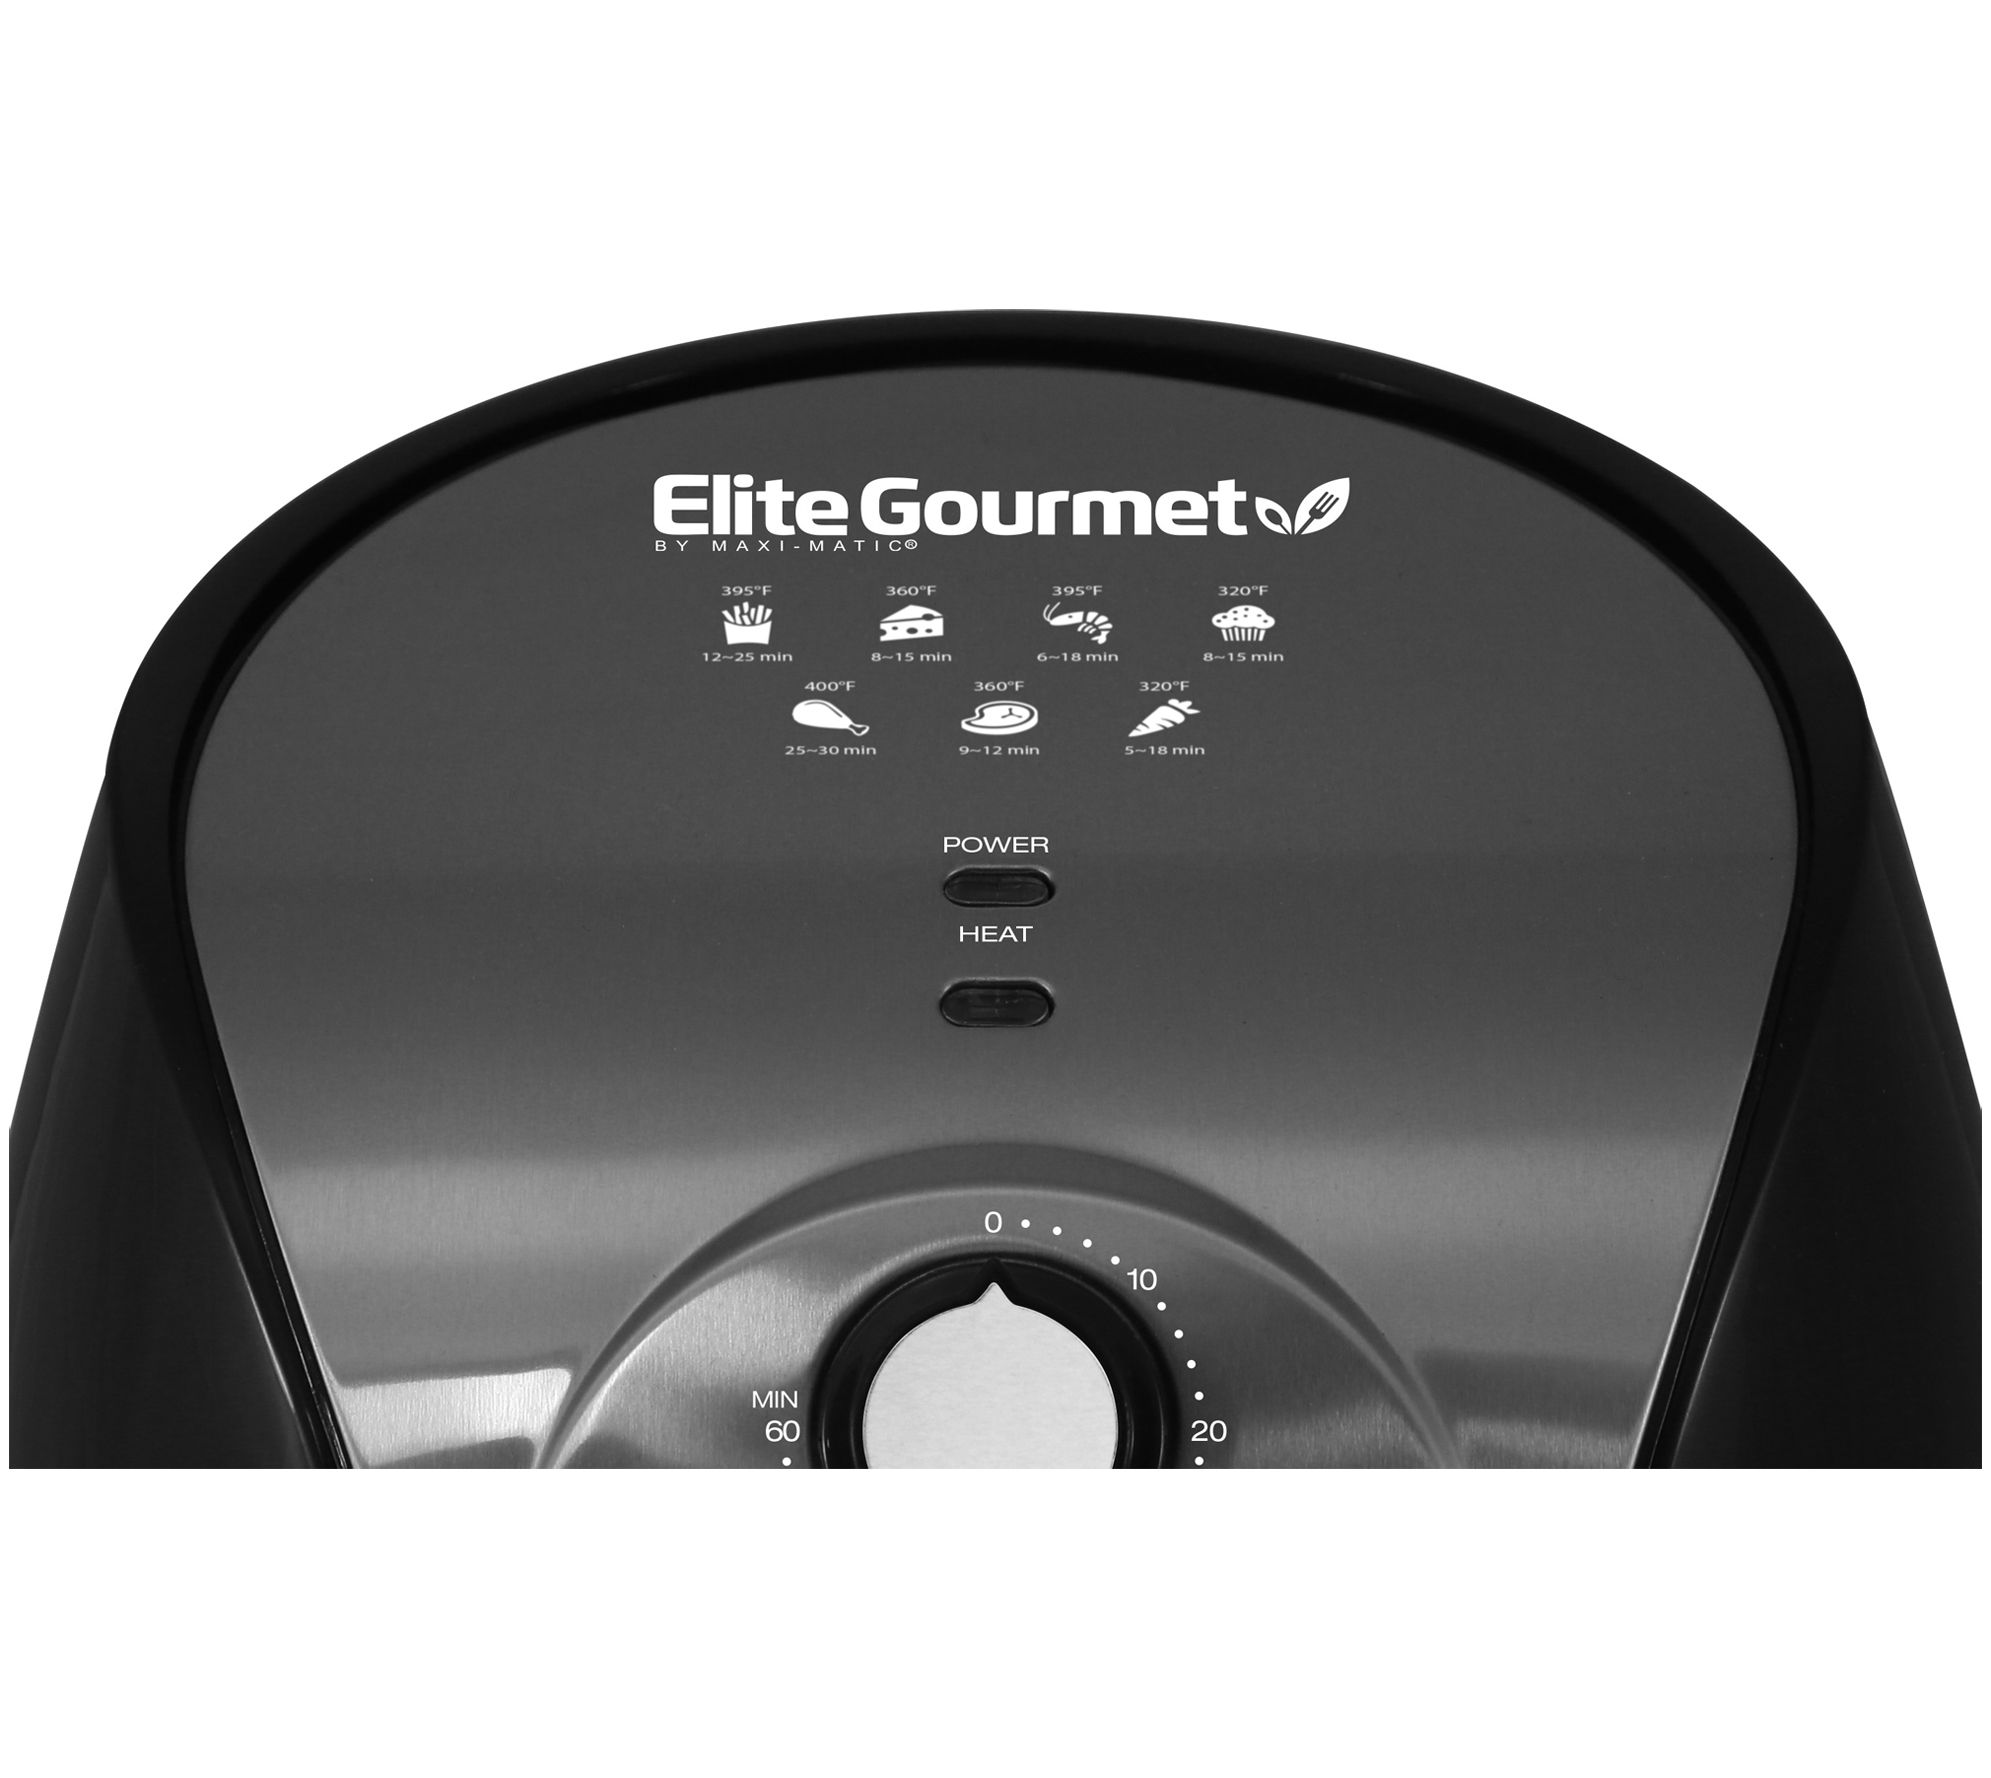 Elite Gourmet Hot Air Fryer - 2.1 qt